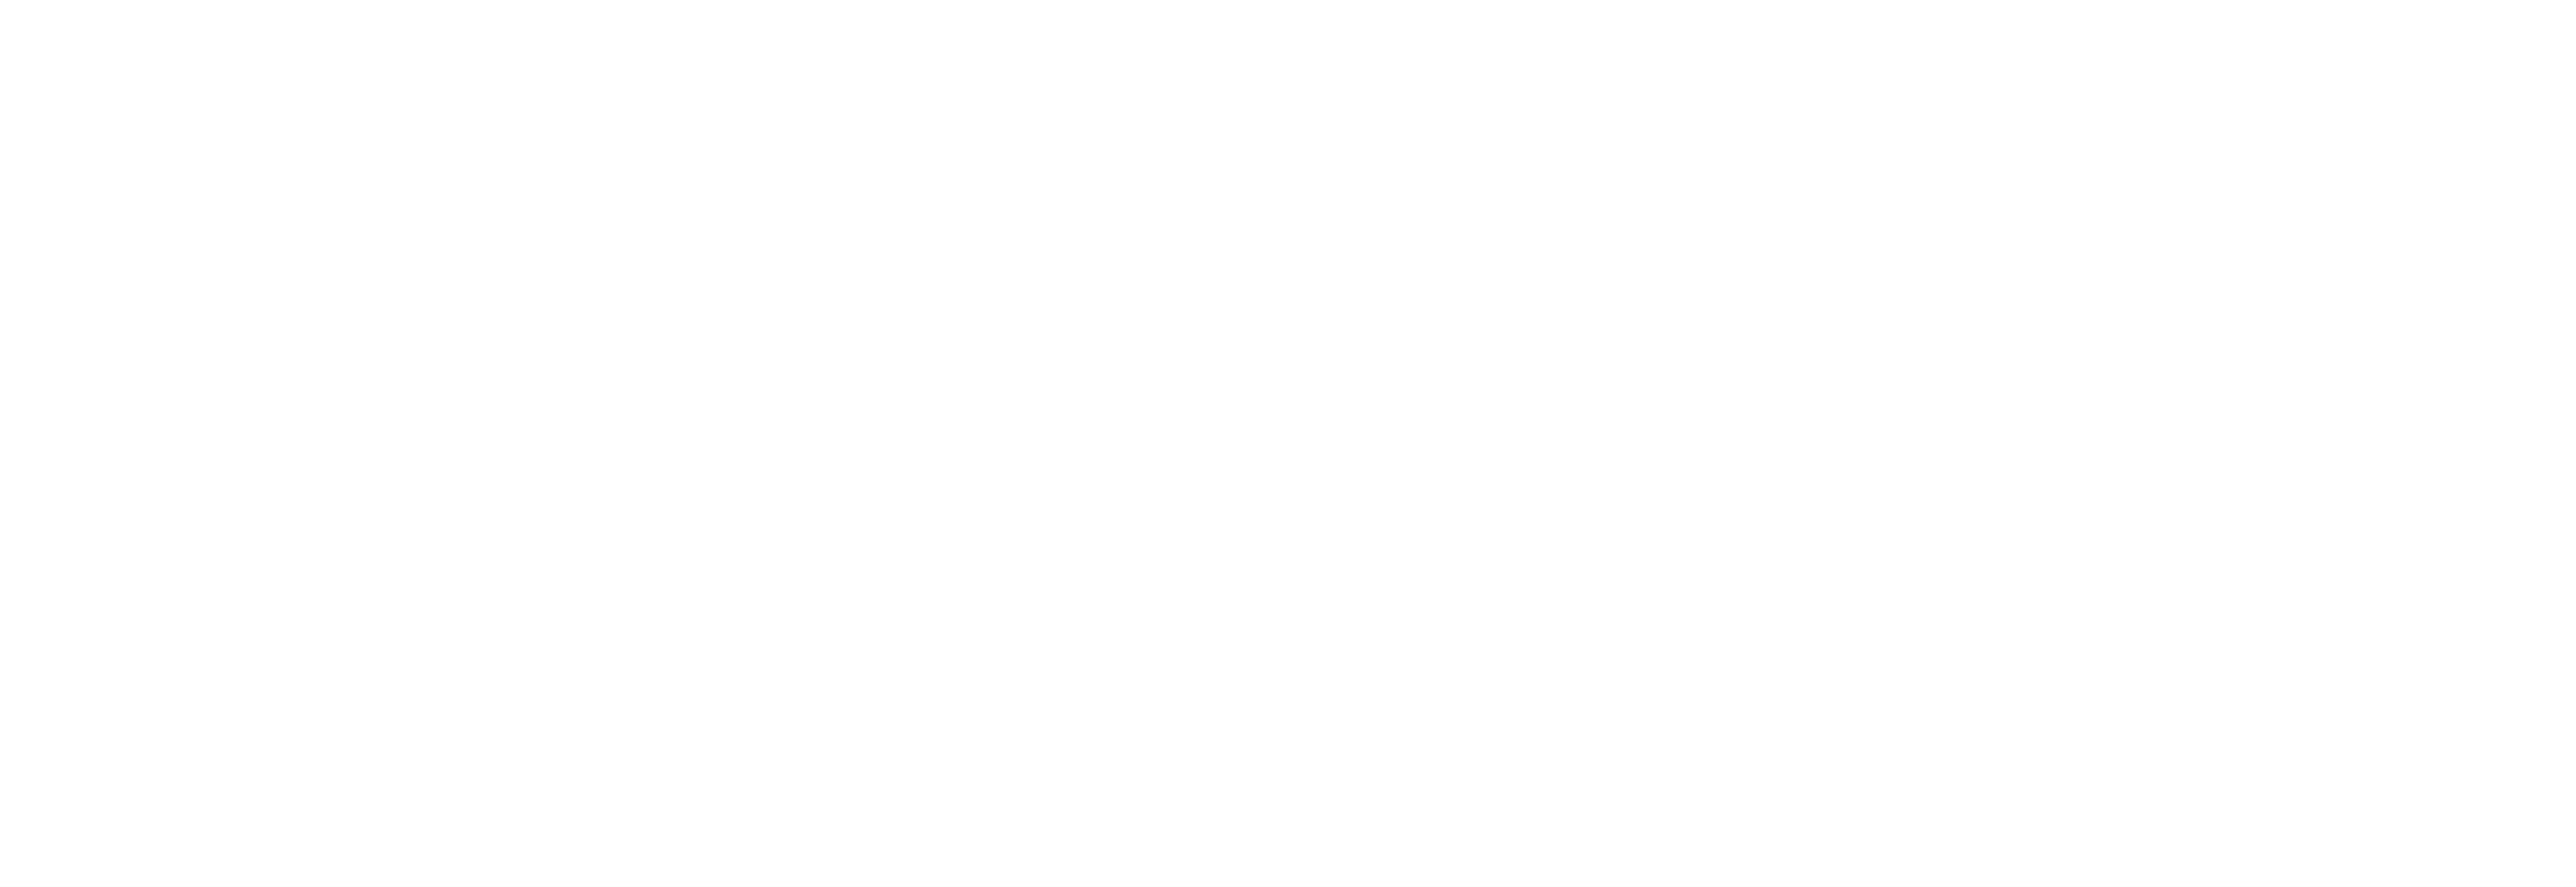 Melanie-Schmidt_Logo-weisse-Schrift-mit-transparentem-Hintergrund